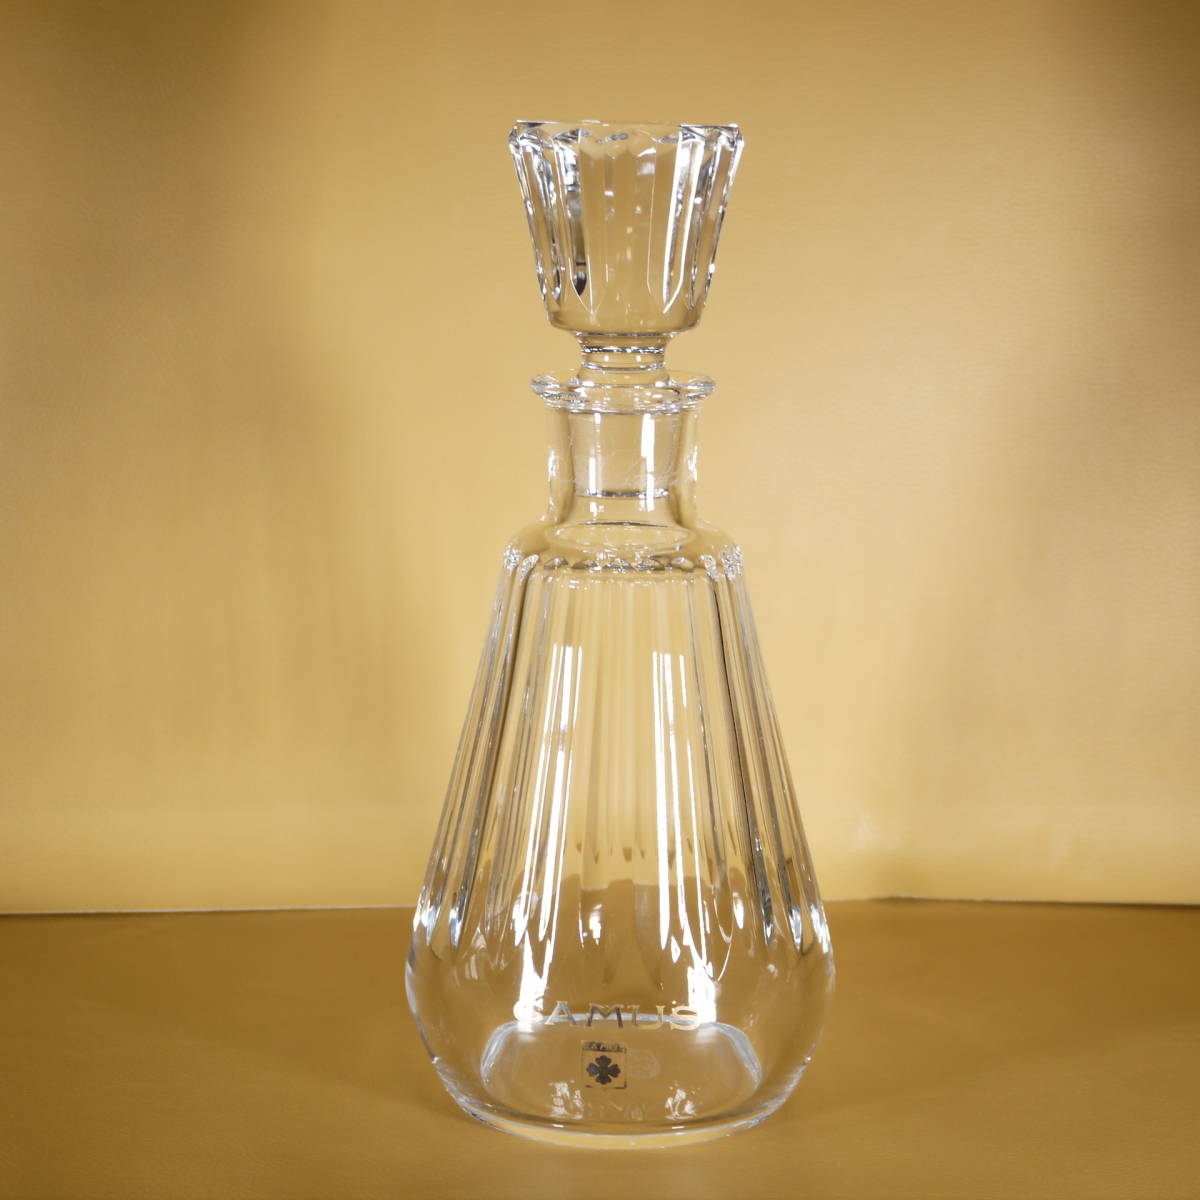 Baccarat バカラ クリスタルガラス CAMUS カミュ デカンタ デキャンタ 空瓶の画像1